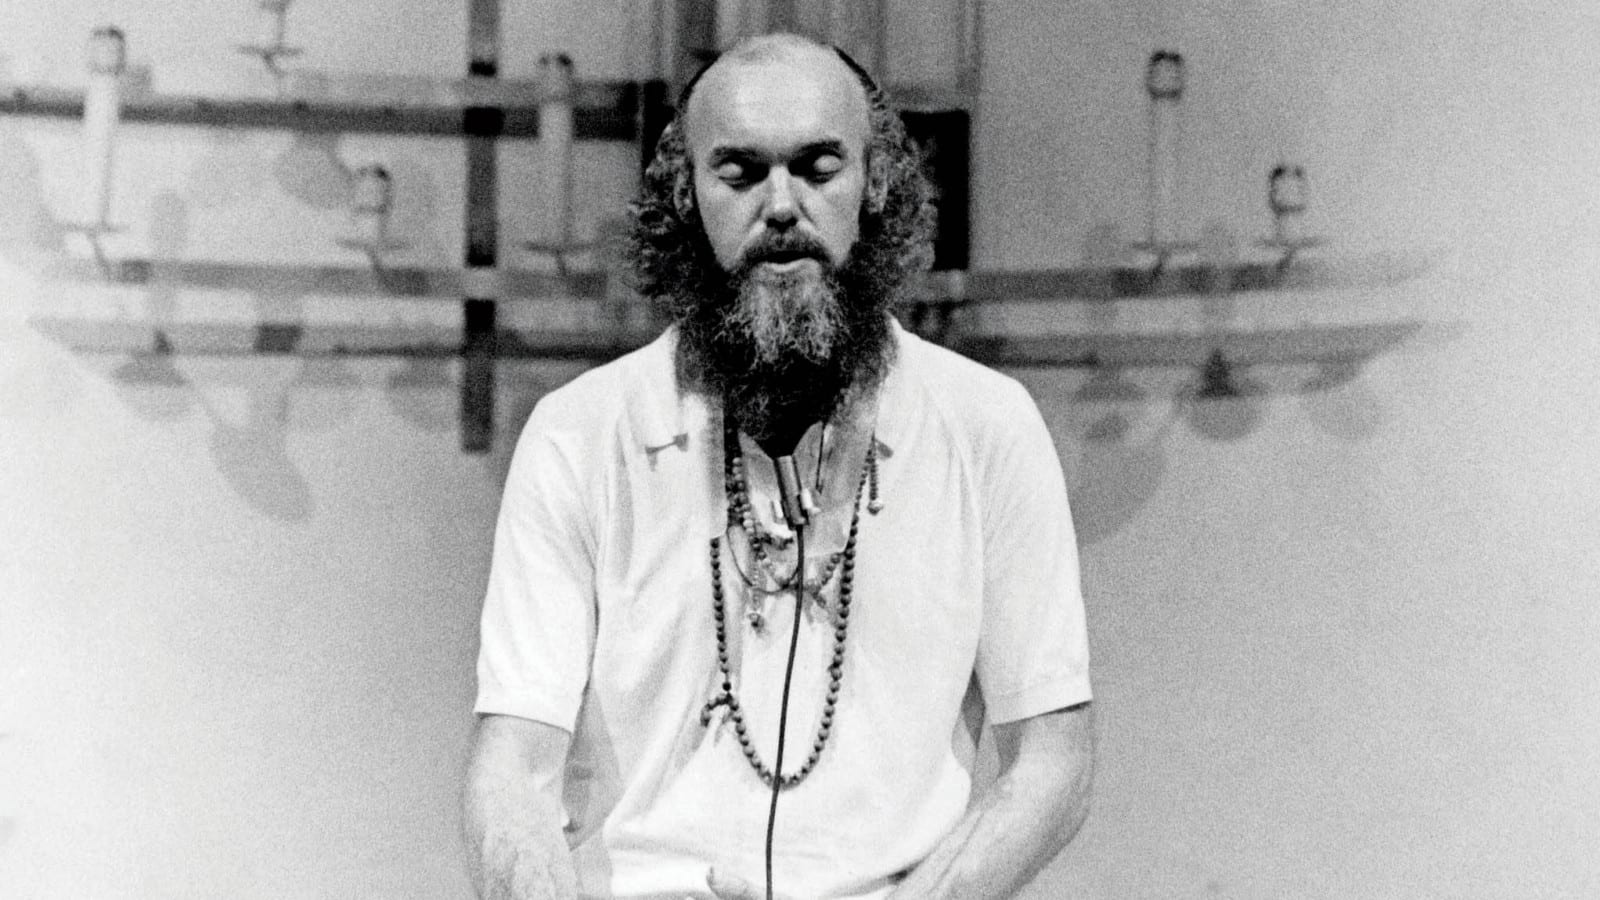 Ram Dass